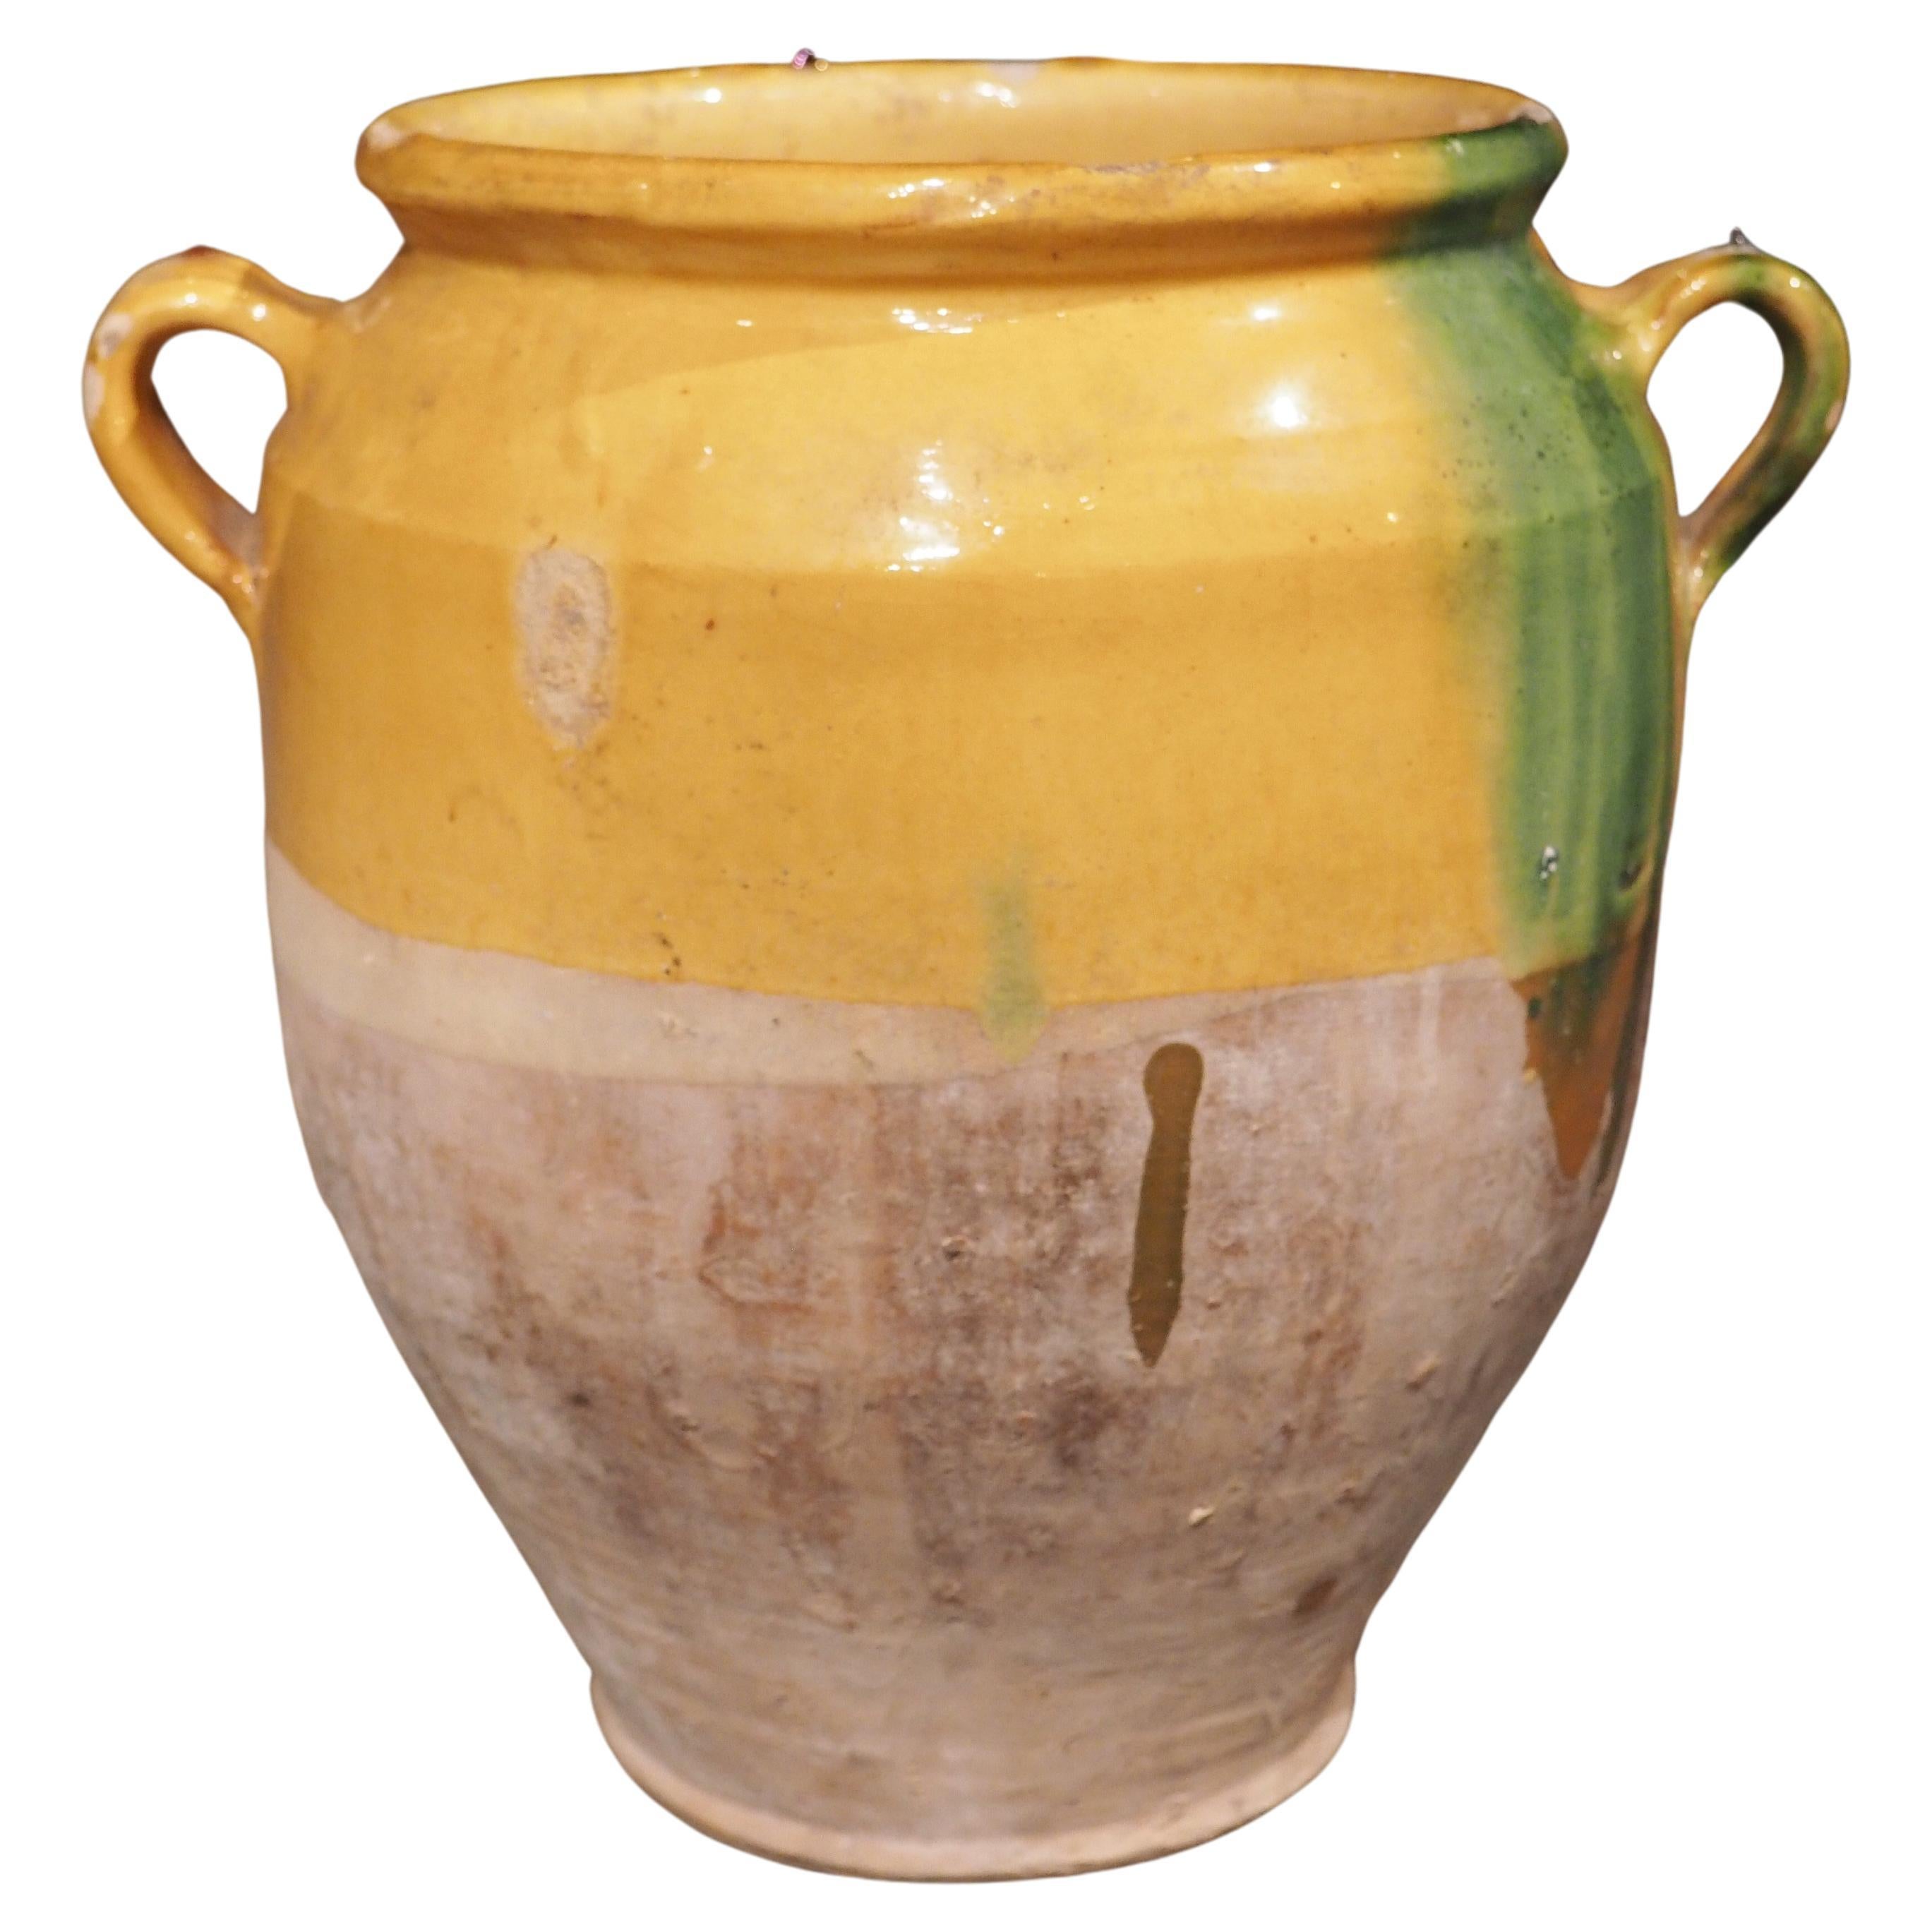 Antique Confit Pot from Southwest France